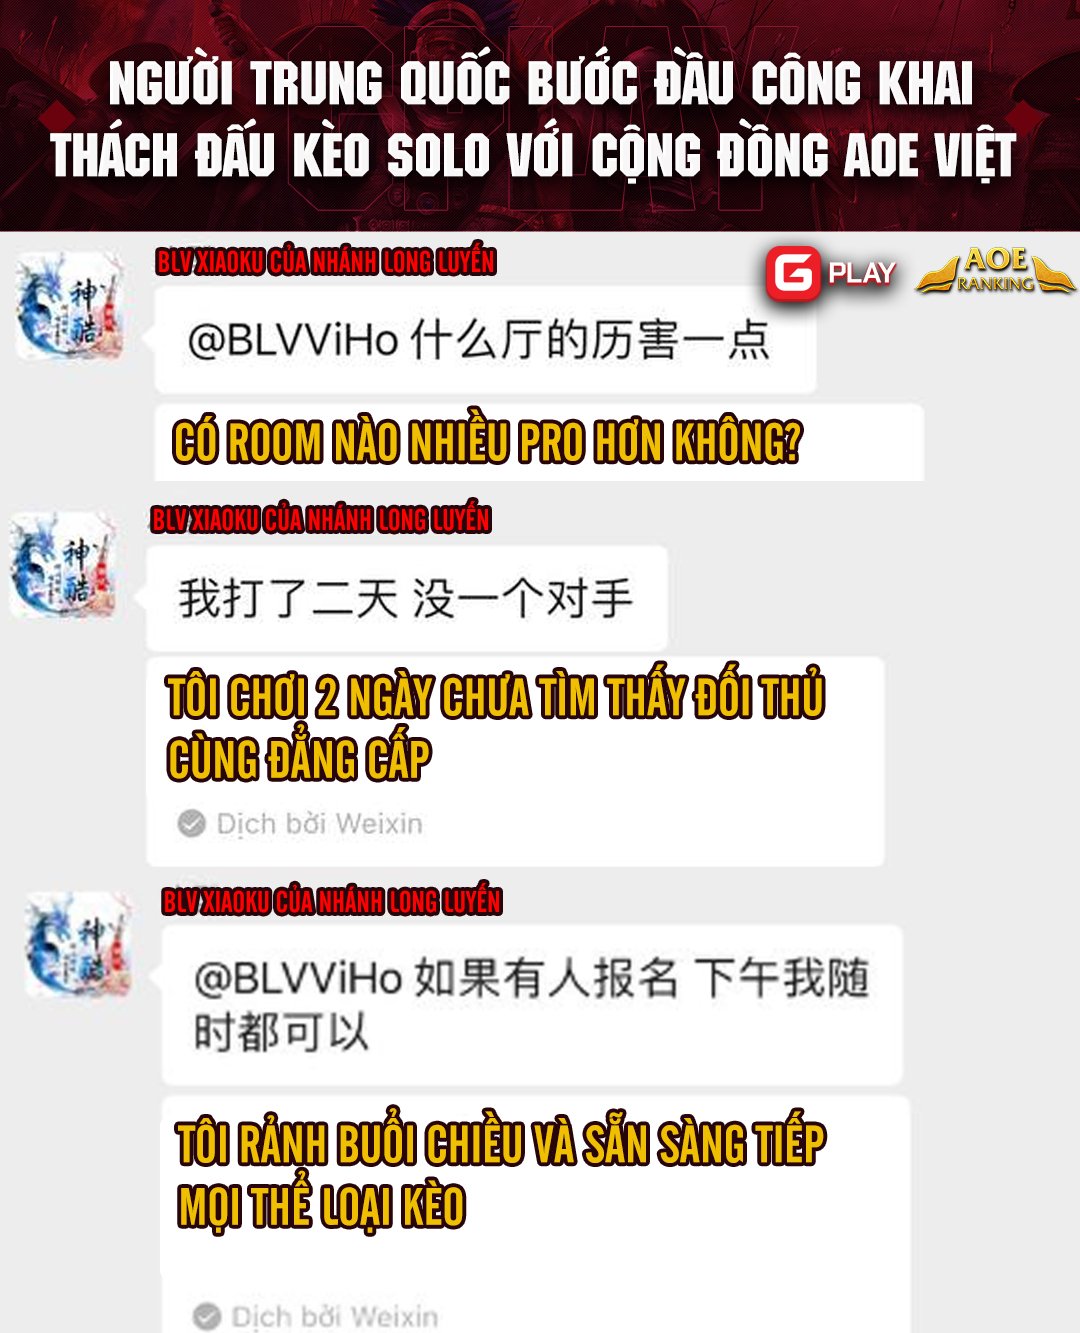 BLV AOE Trung Quốc nhận cái kết đắng khi gáy sớm trên GPlay